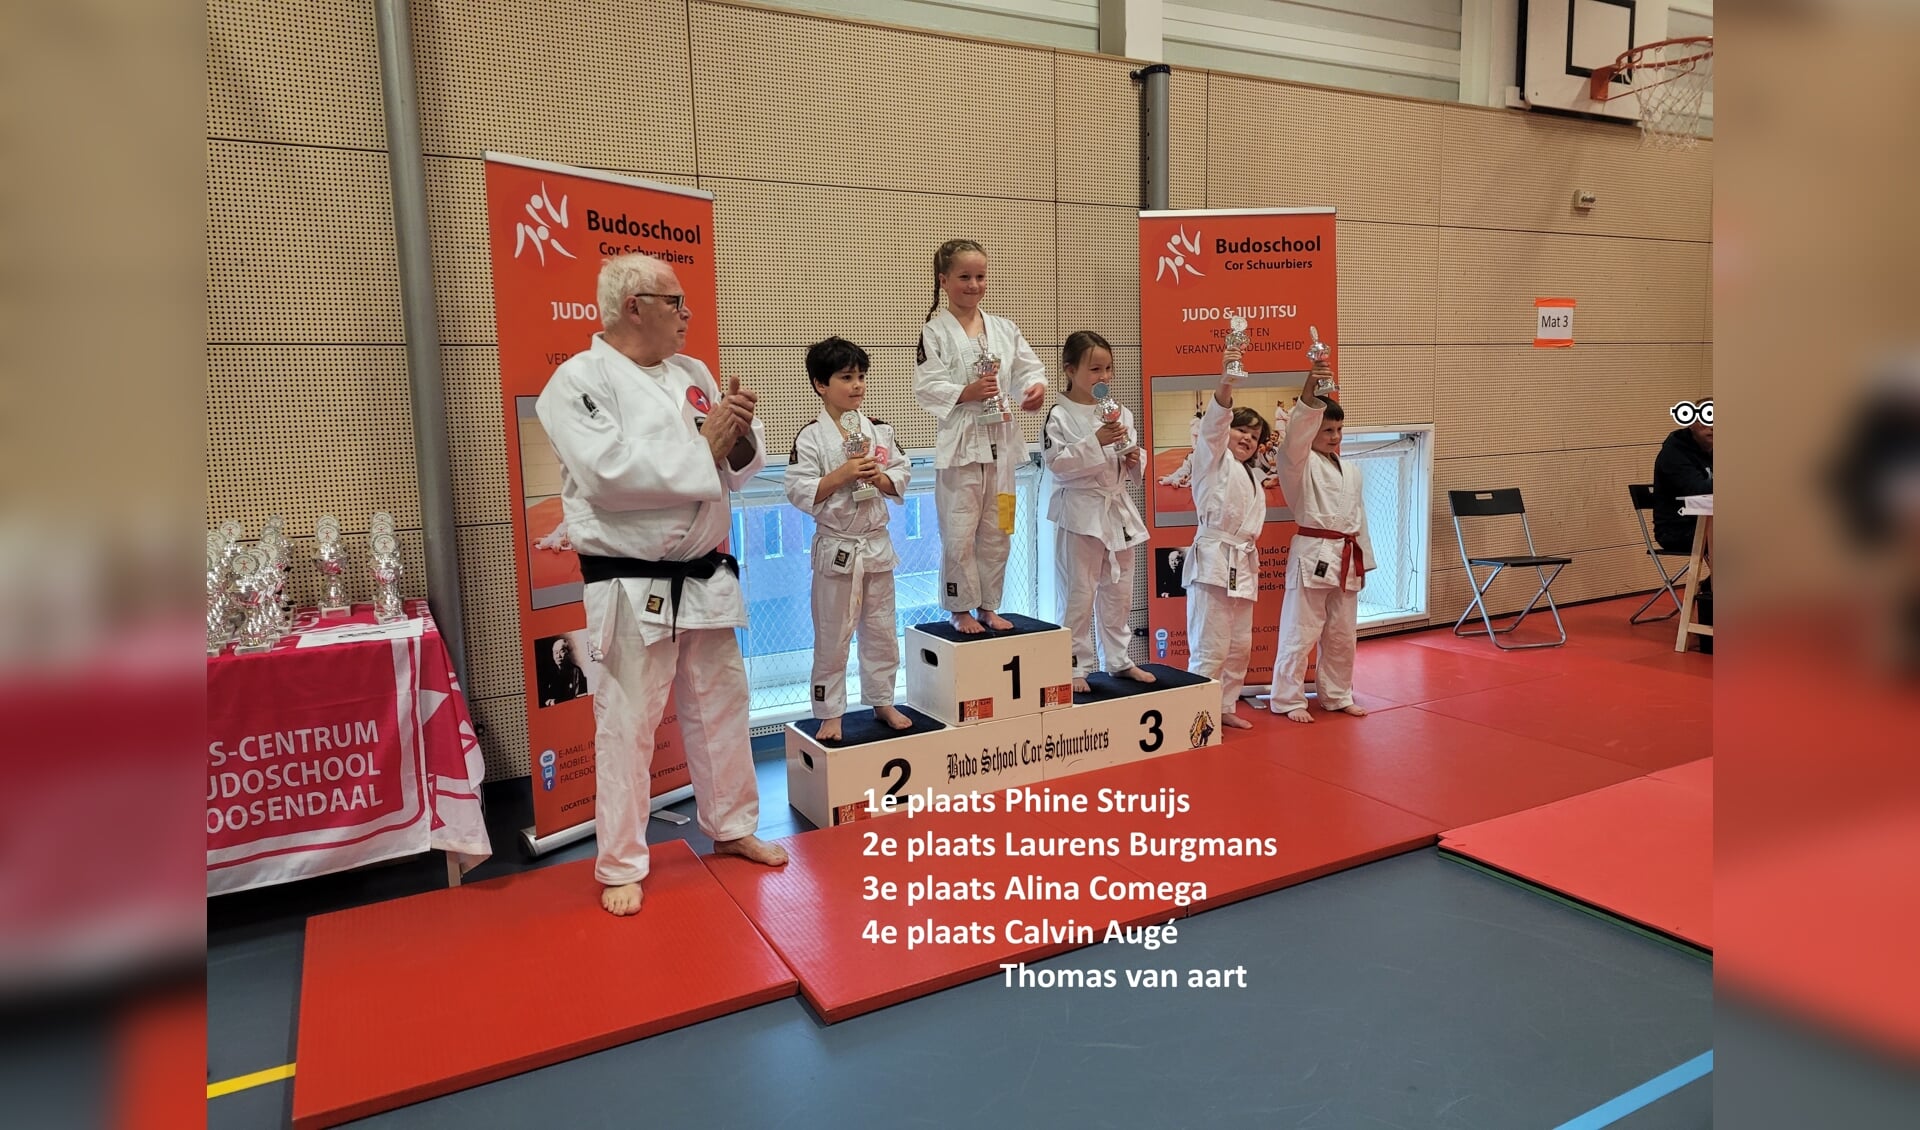 Uitsla Judo met Jinte van den Beemd uit Roosendaal met de 1e Plaats en Alina Comega uit Roosendaal met een 3e plaats.